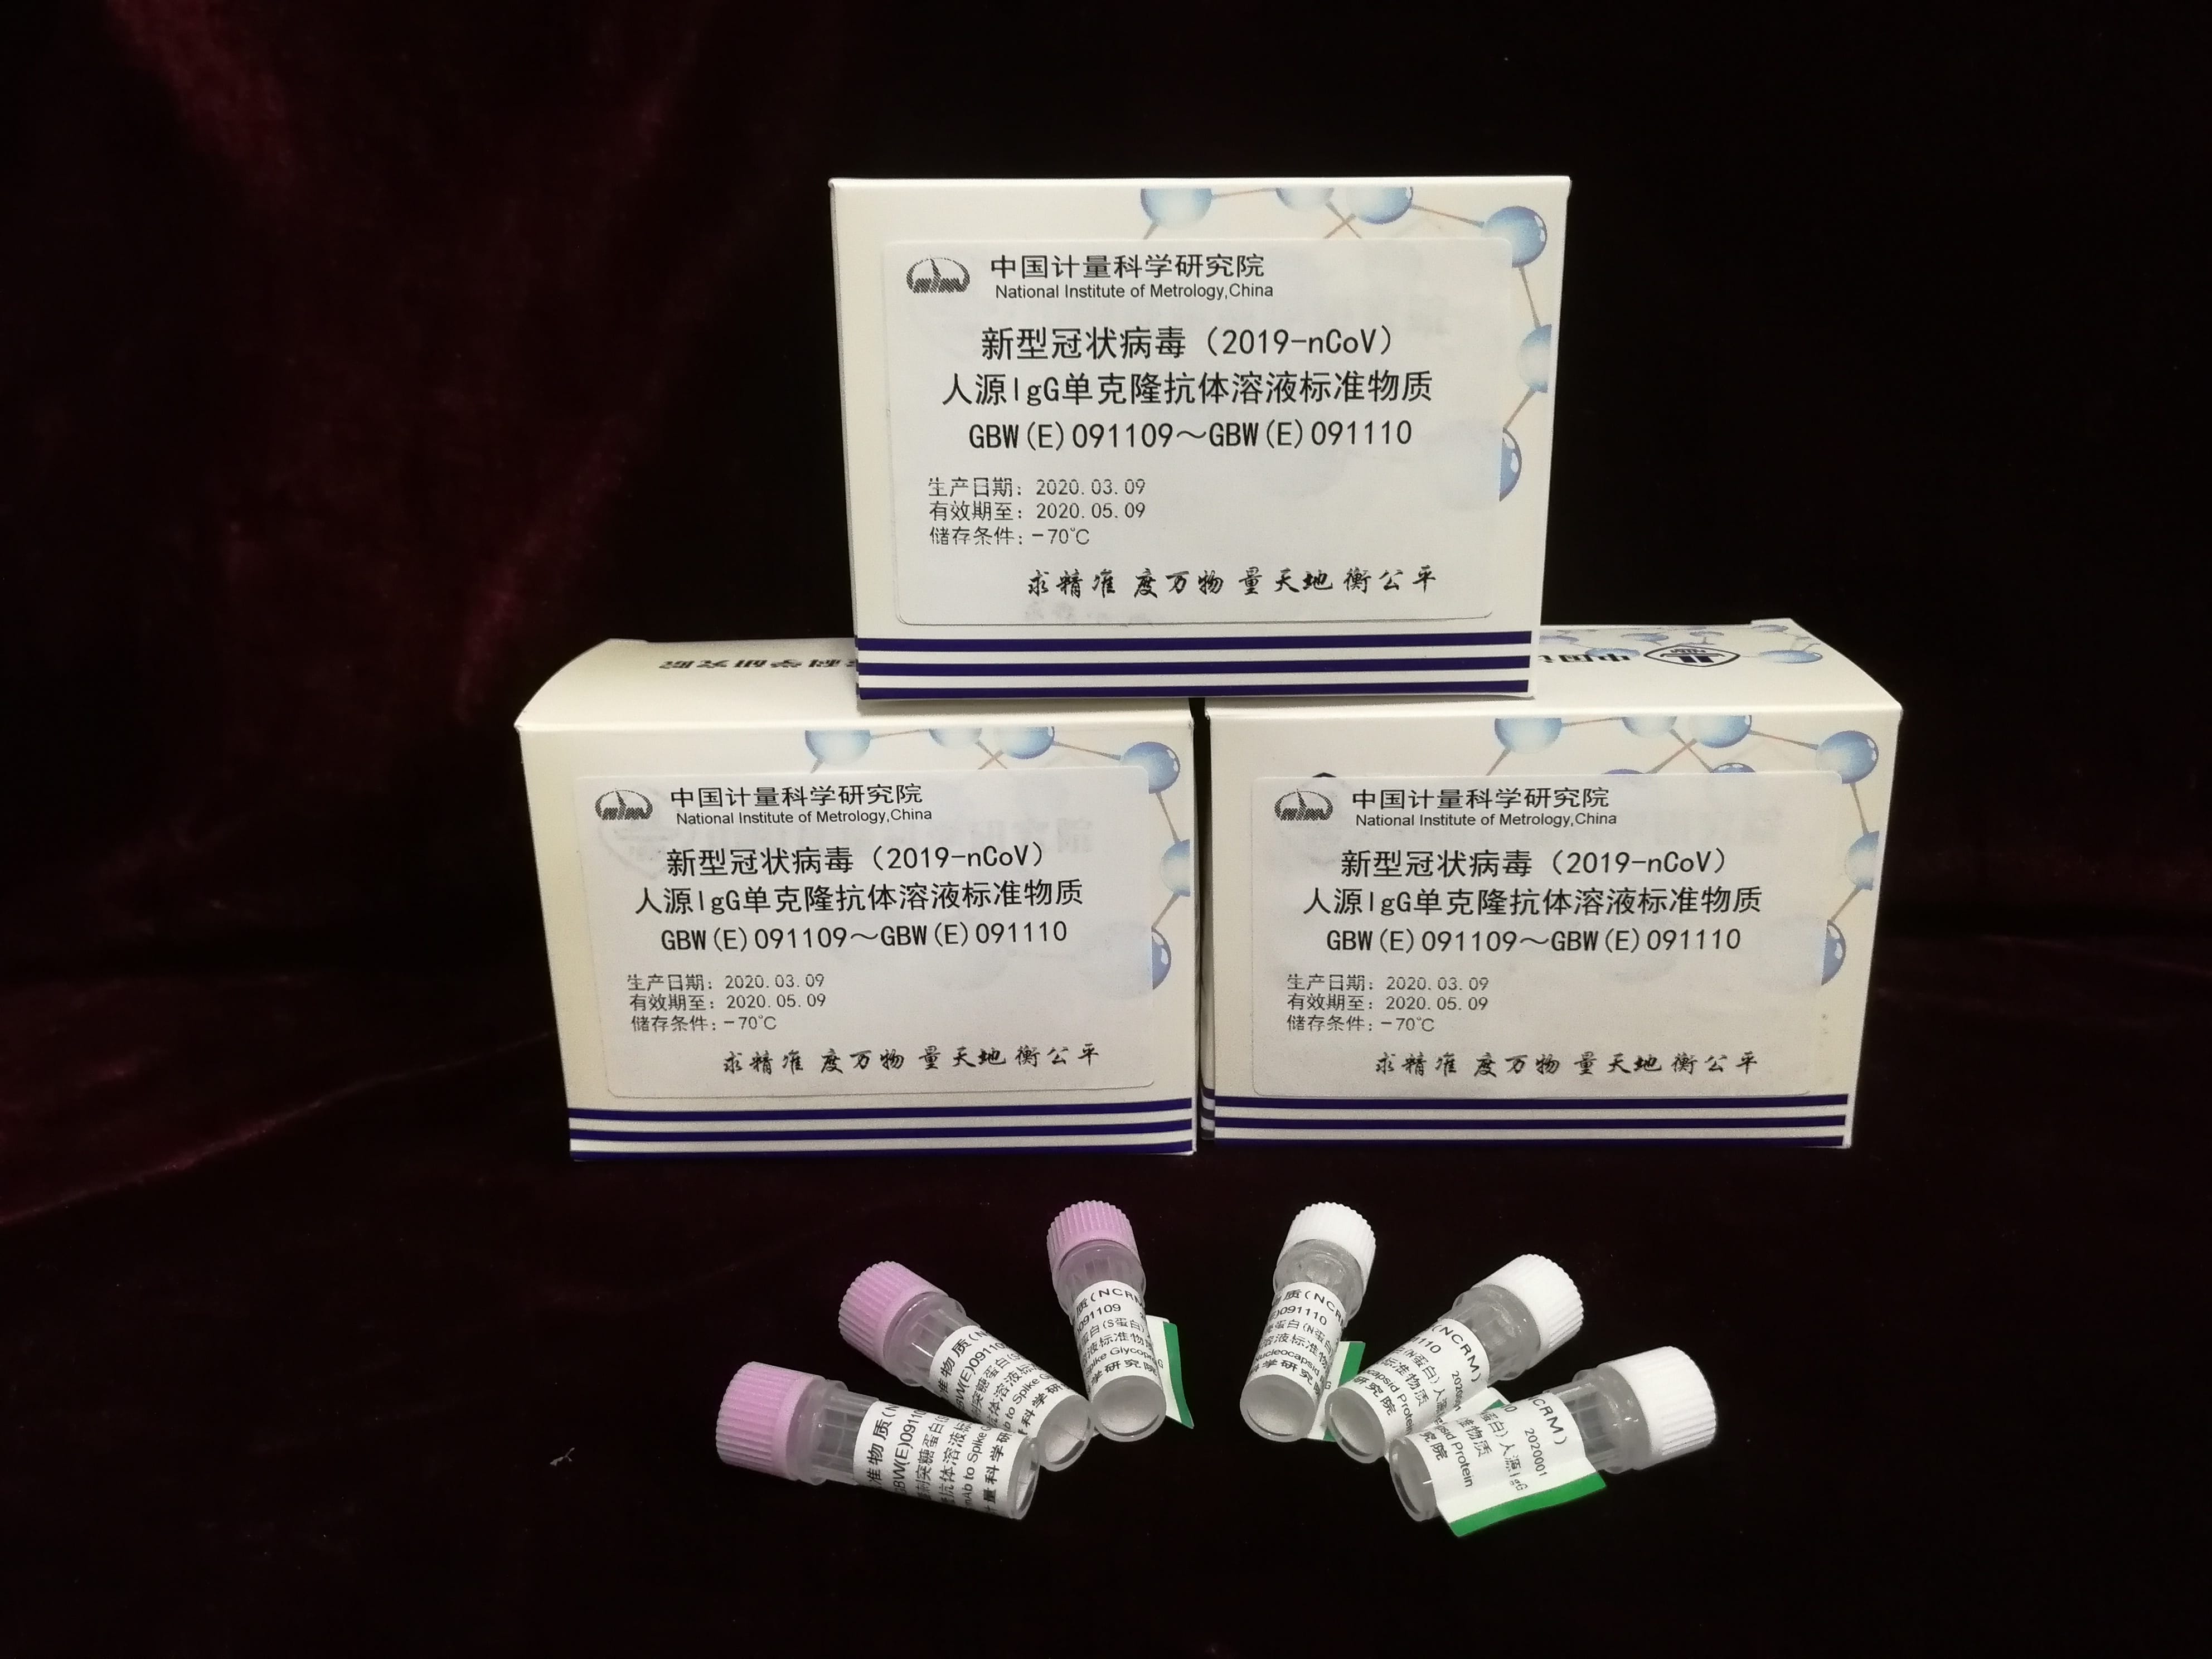 中国计量院成功研制新冠病毒免疫学检测用标准物质